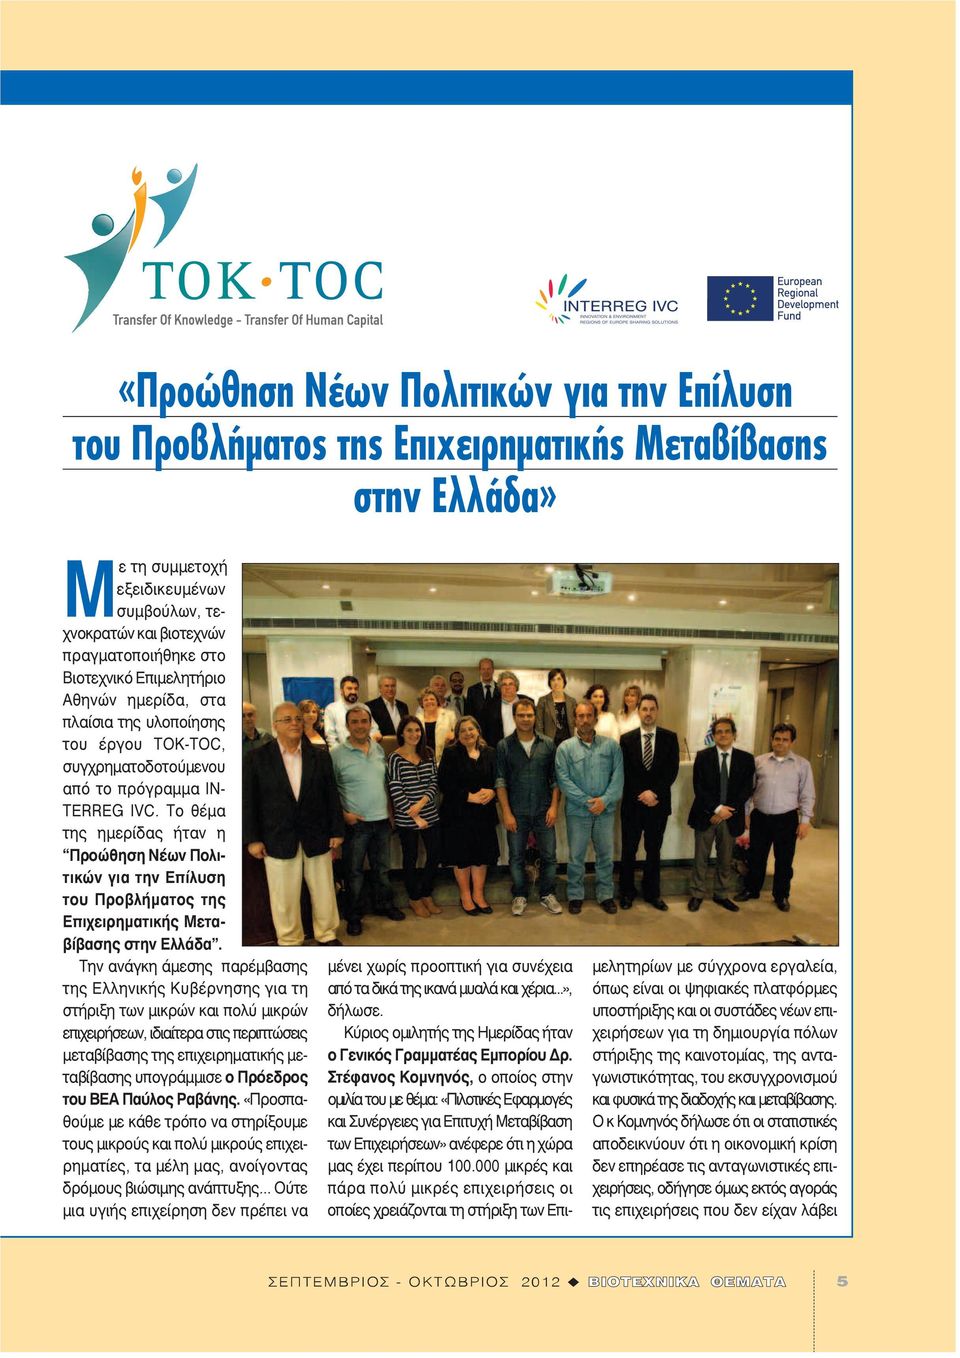 Το θέμα της ημερίδας ήταν η Προώθηση Νέων Πολιτικών για την Επίλυση του Προβλήματος της Επιχειρηματικής Μεταβίβασης στην Ελλάδα.